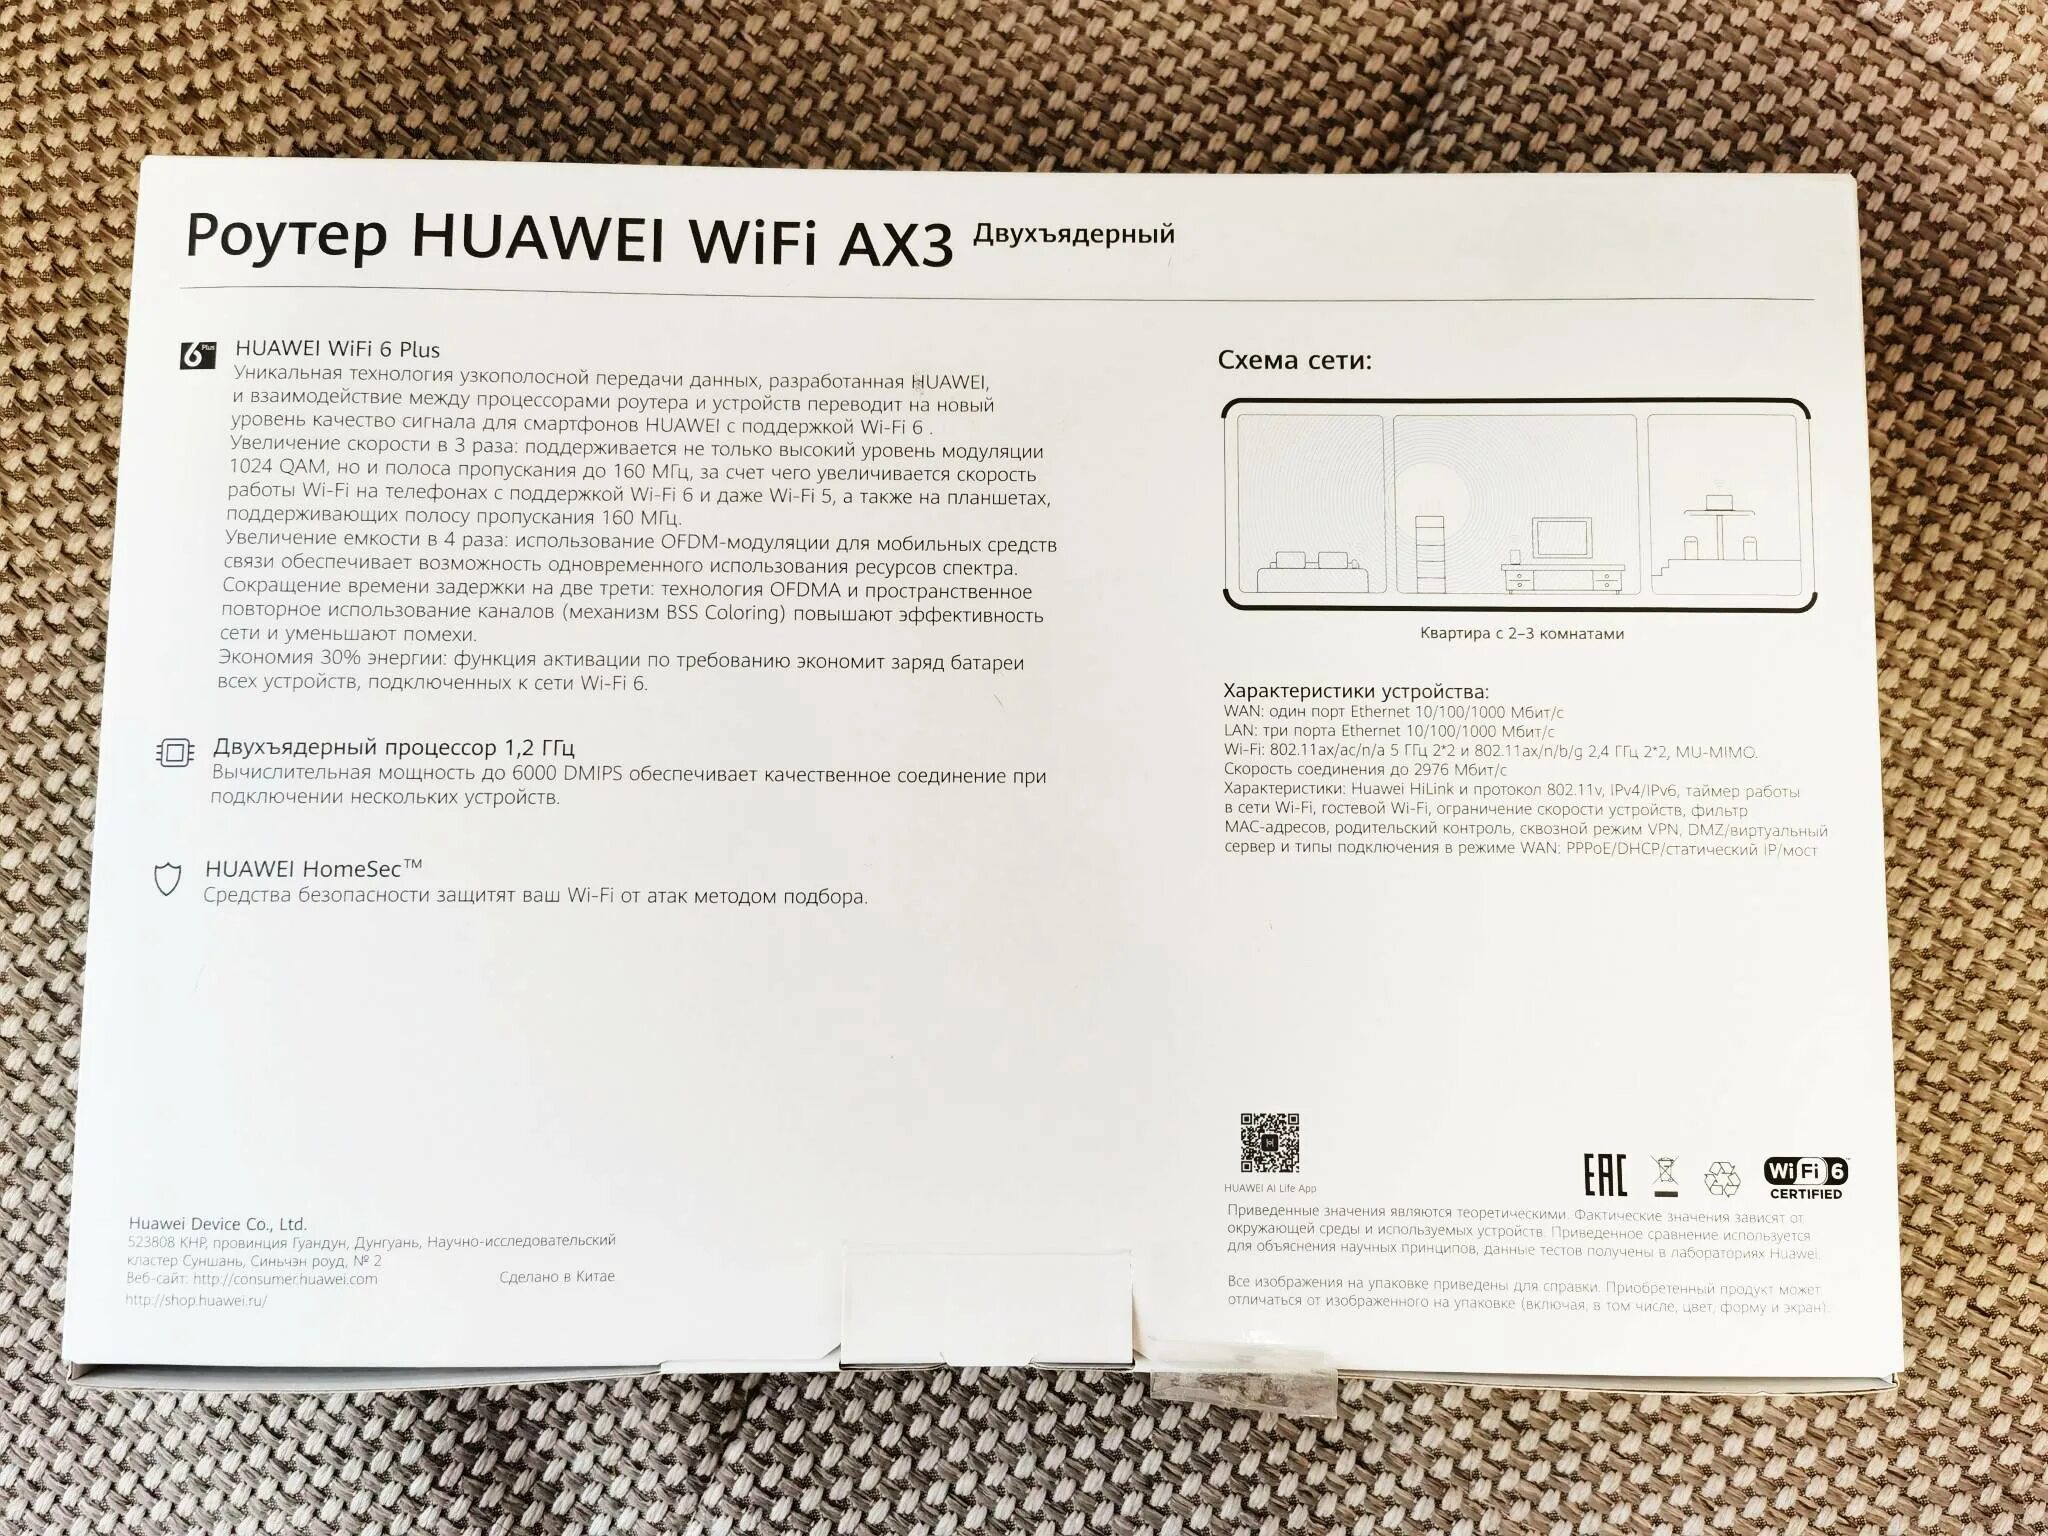 Роутер Huawei WIFI ax3. Wi-Fi роутер Huawei ax3 ws7200. Huawei WIFI ax3 Dual Core ws7100. Wi-Fi роутер Huawei ws7100, белый.